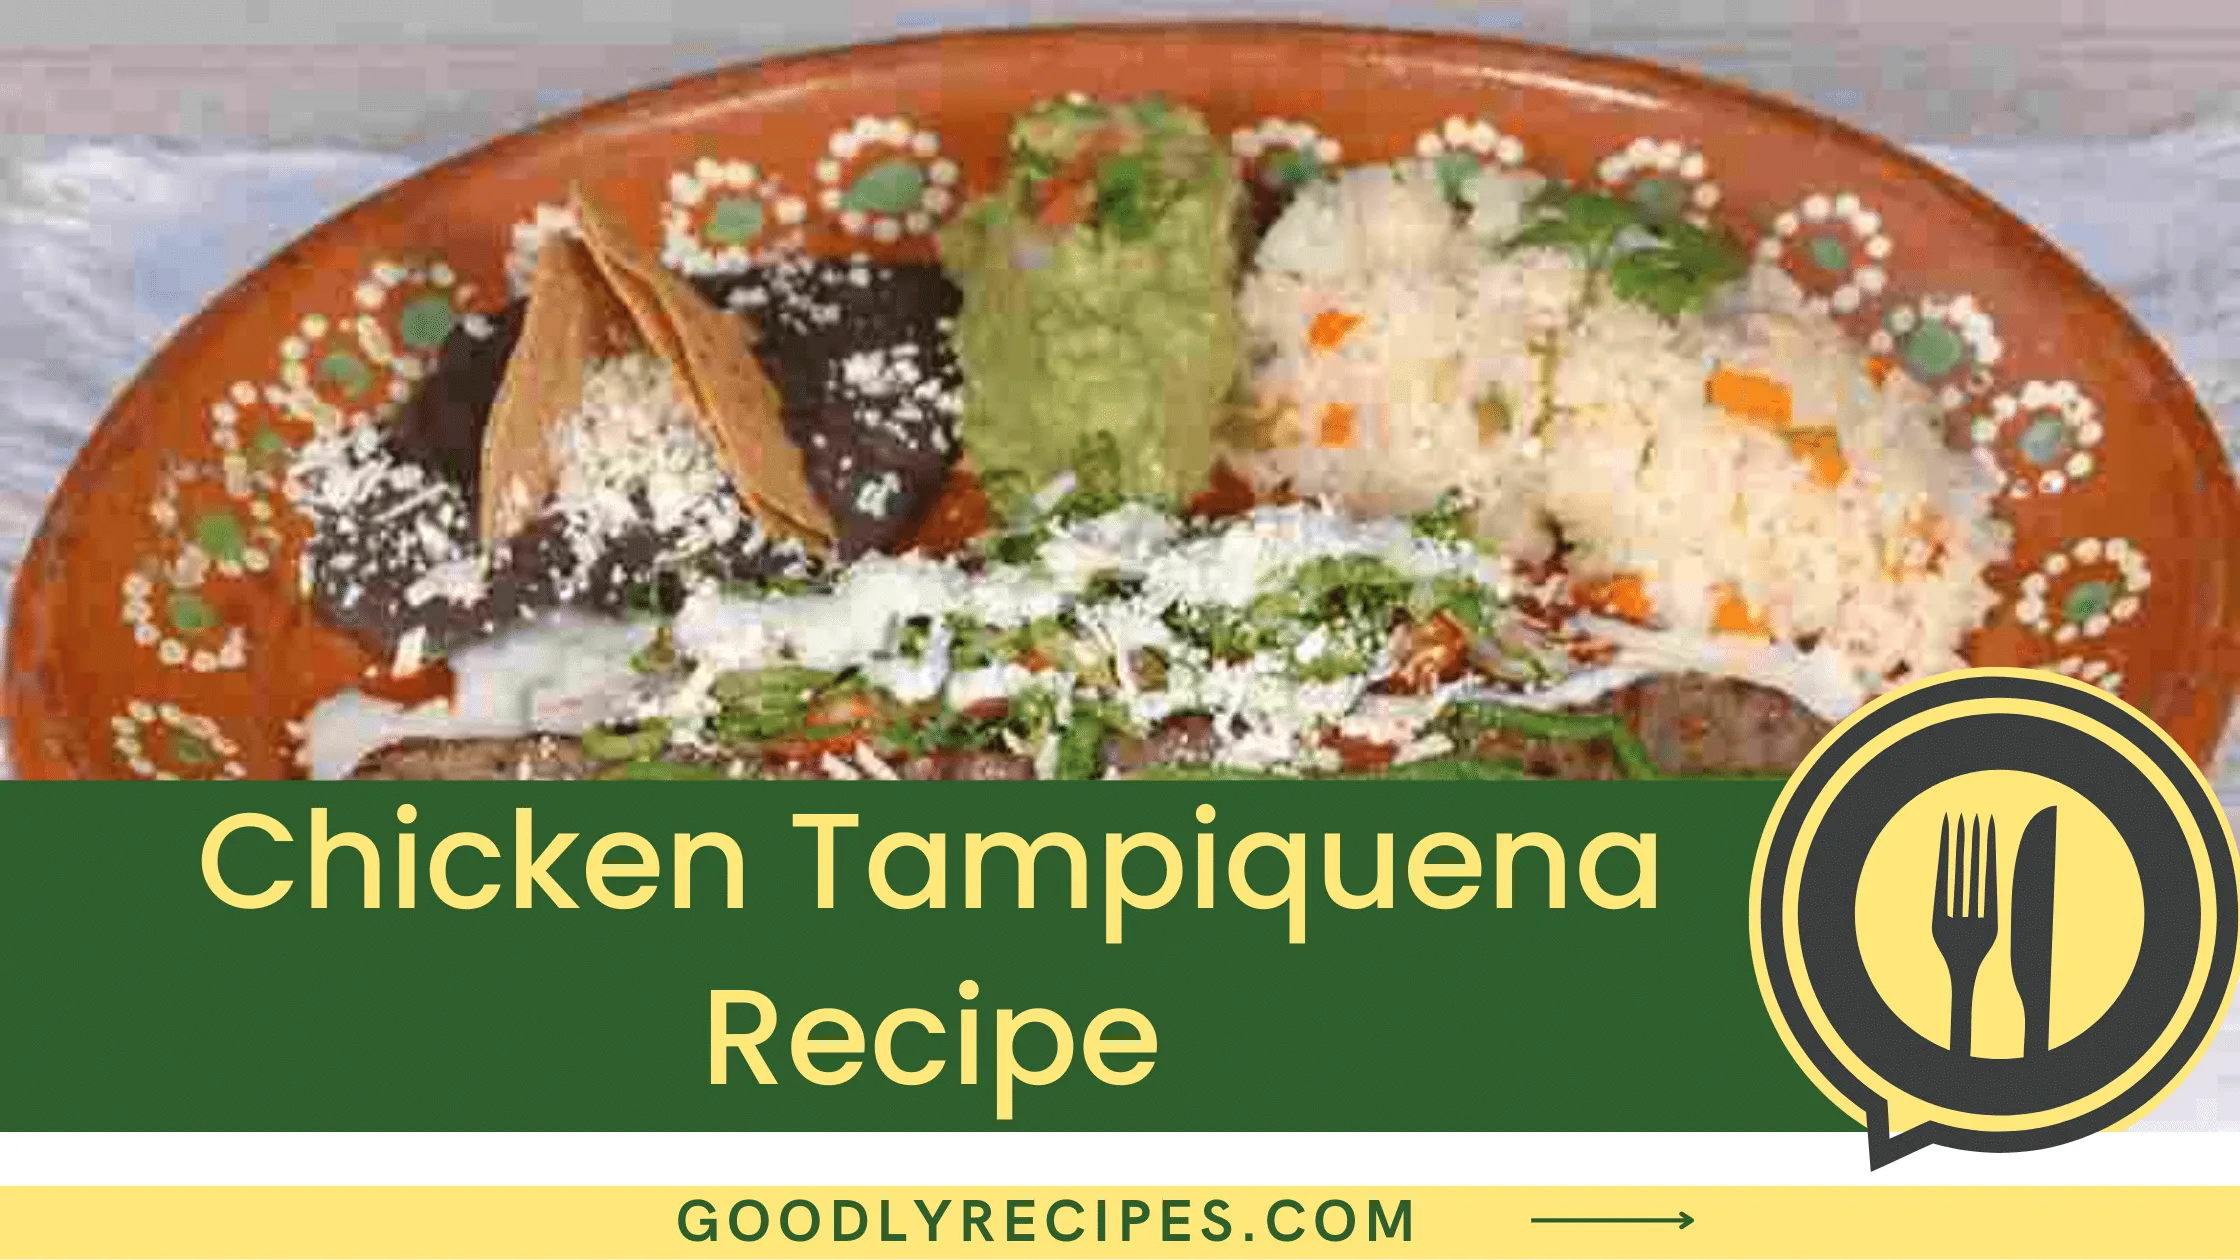 What is Chicken Tampiquena?